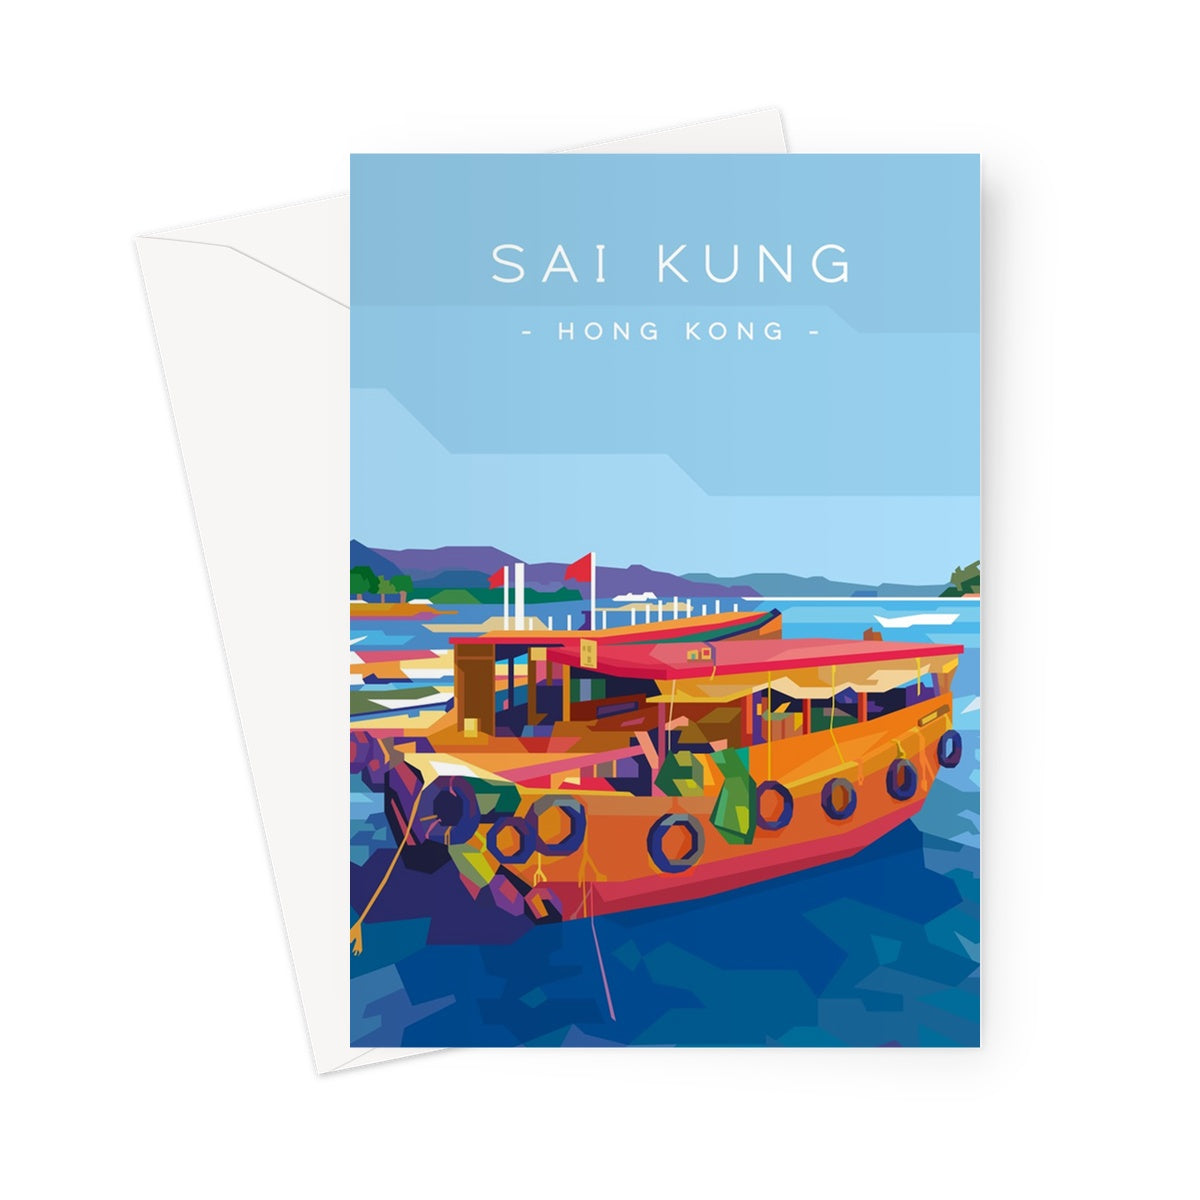 Hong Kong Travel - Sai Kung Sampans Greeting Card